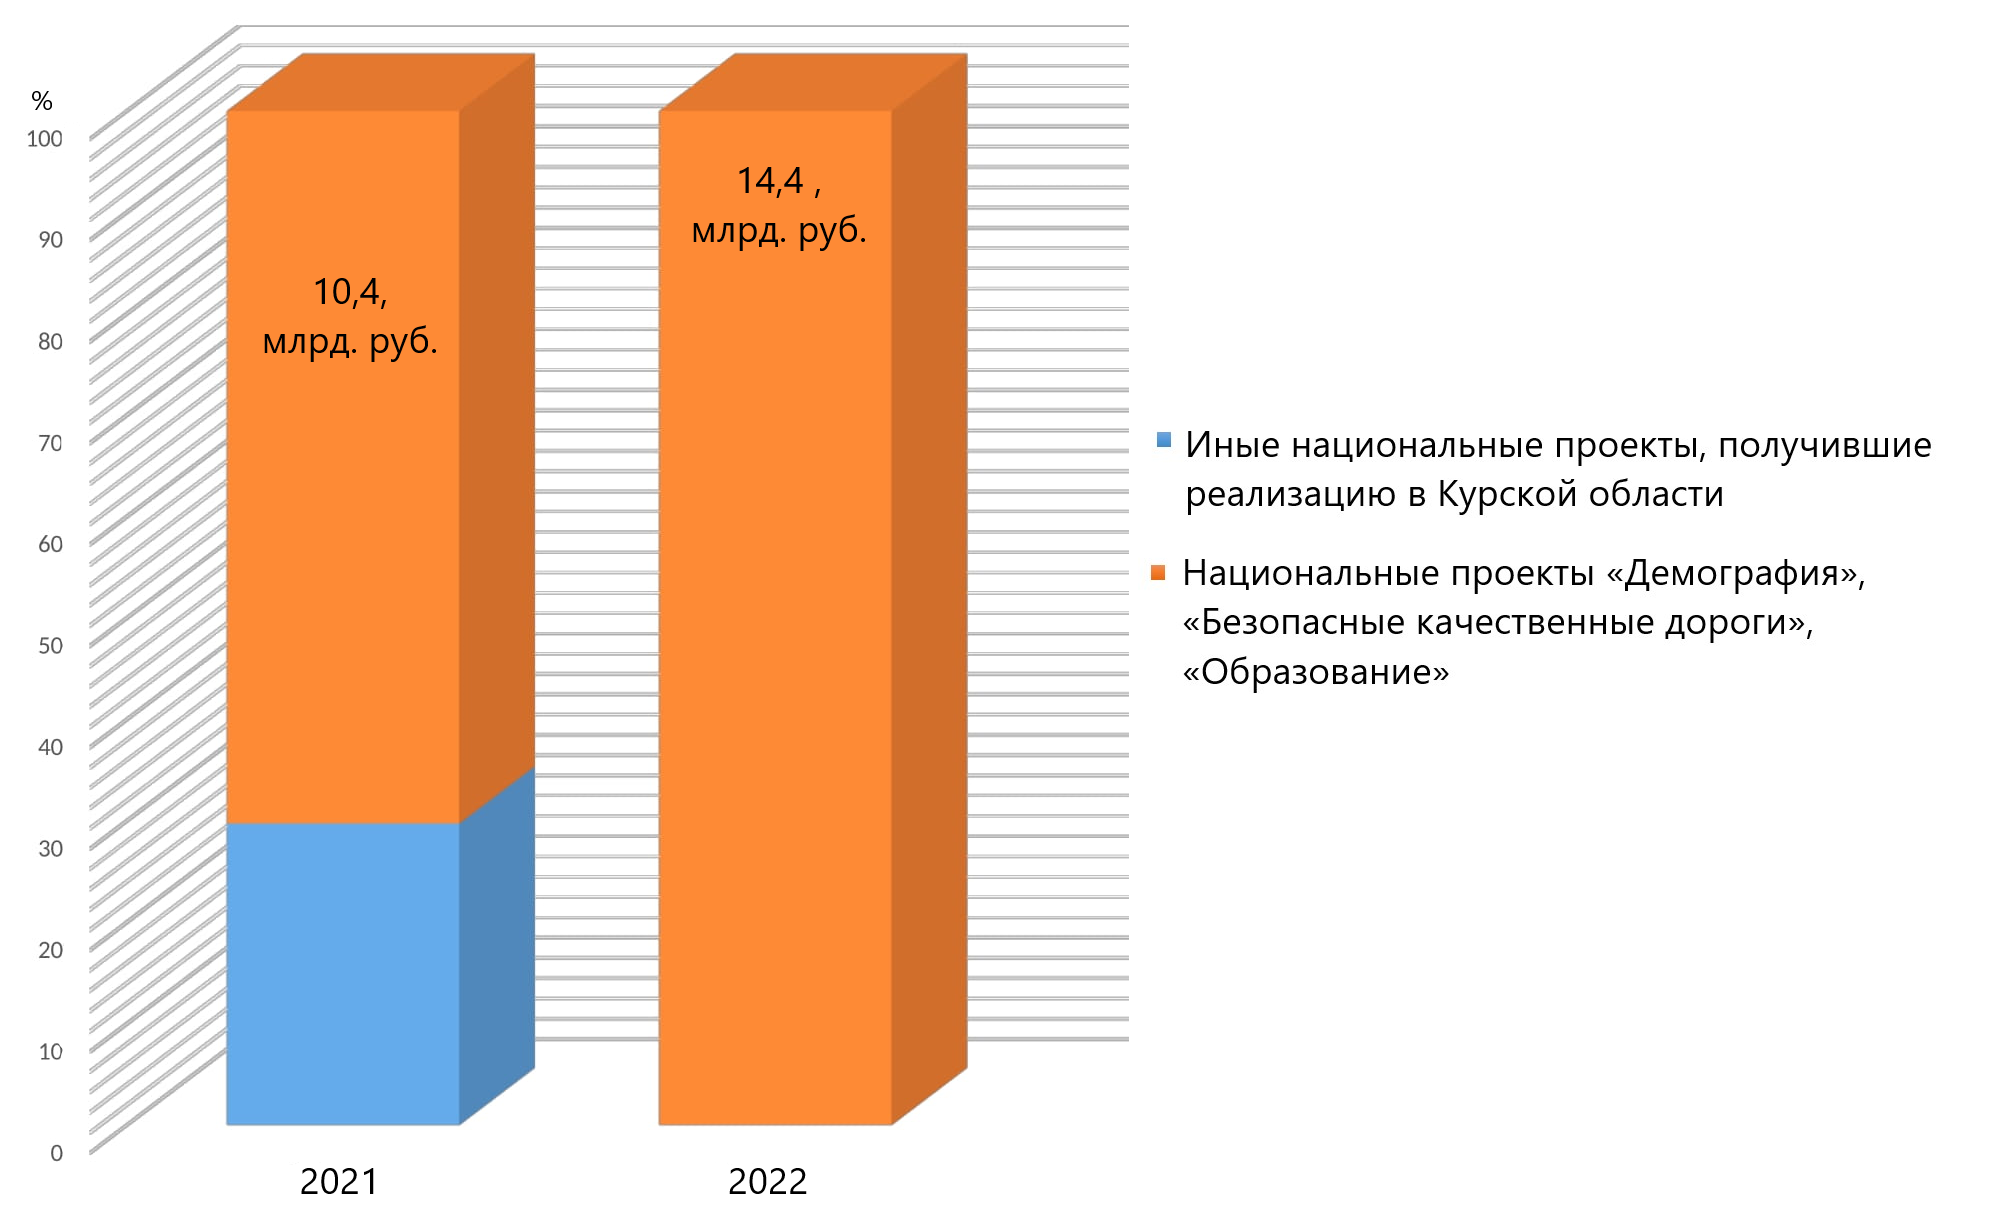 Бюджет на реализацию региональных проектов 2021-2022 в Курской области